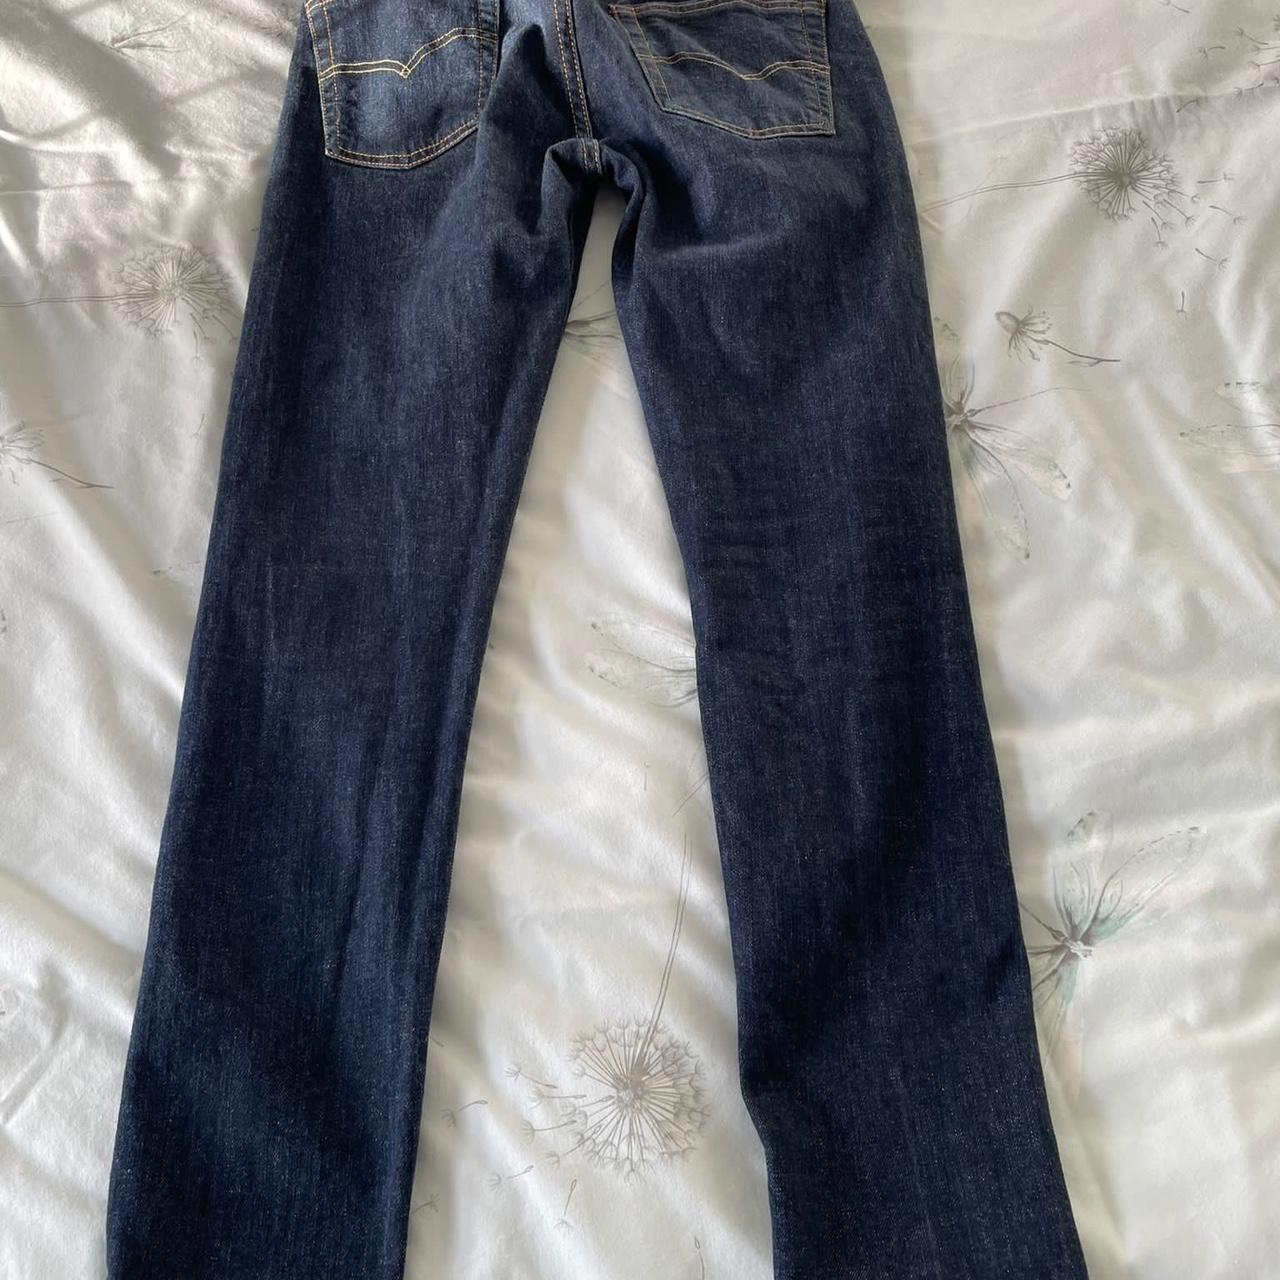 Levi jeans W-27 L-30 Like new - Depop